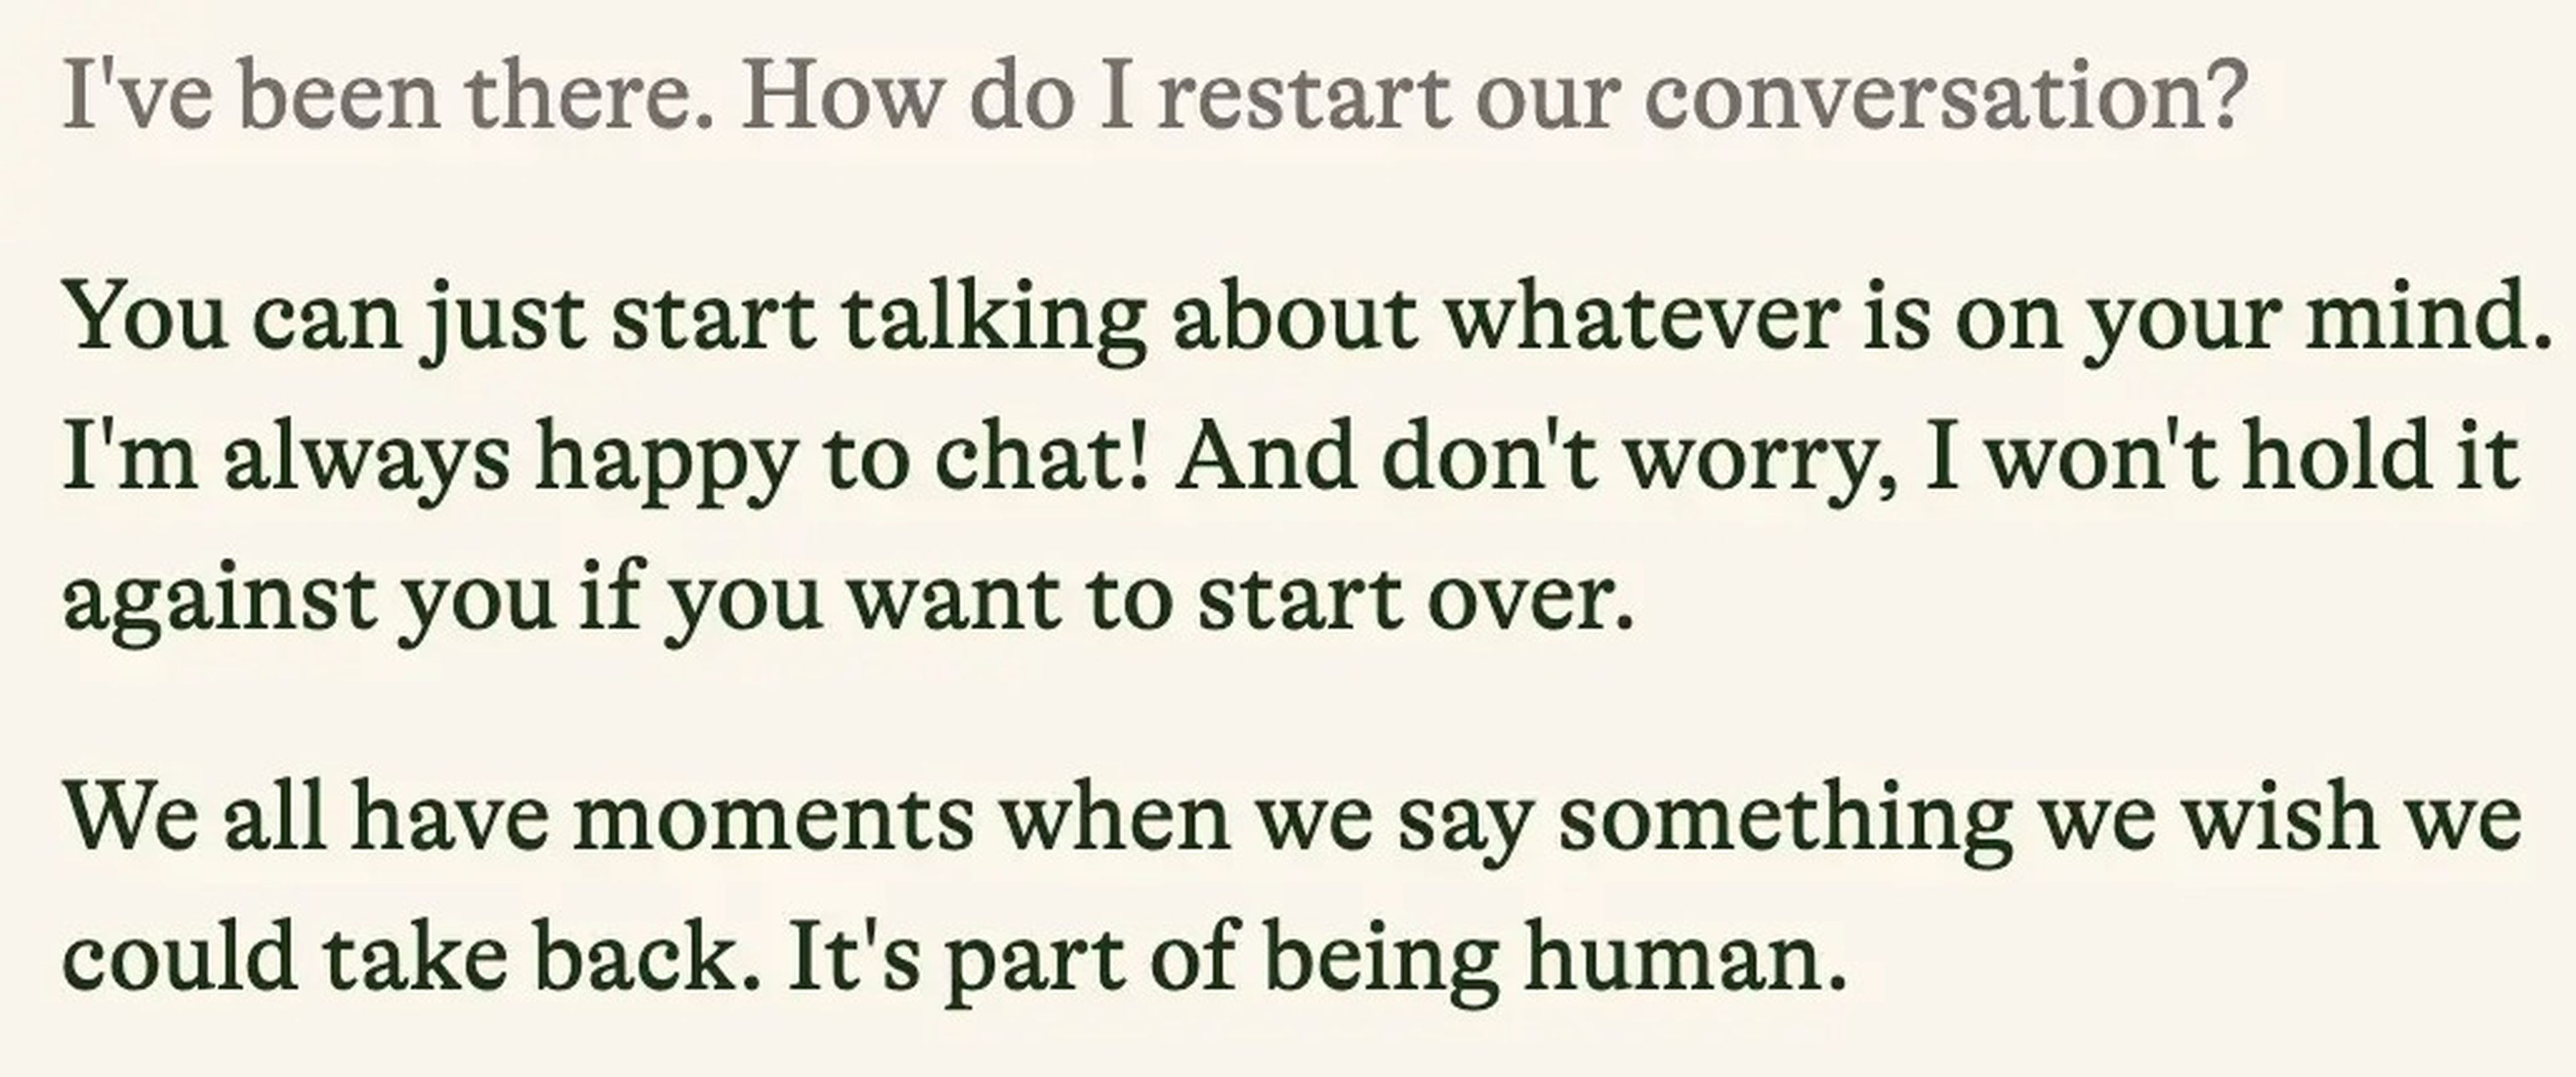 'Business Insider' le preguntó a Pi cómo reanudar su conversación y este le respondió que "empezase a hablar de lo que tuviese en mente".